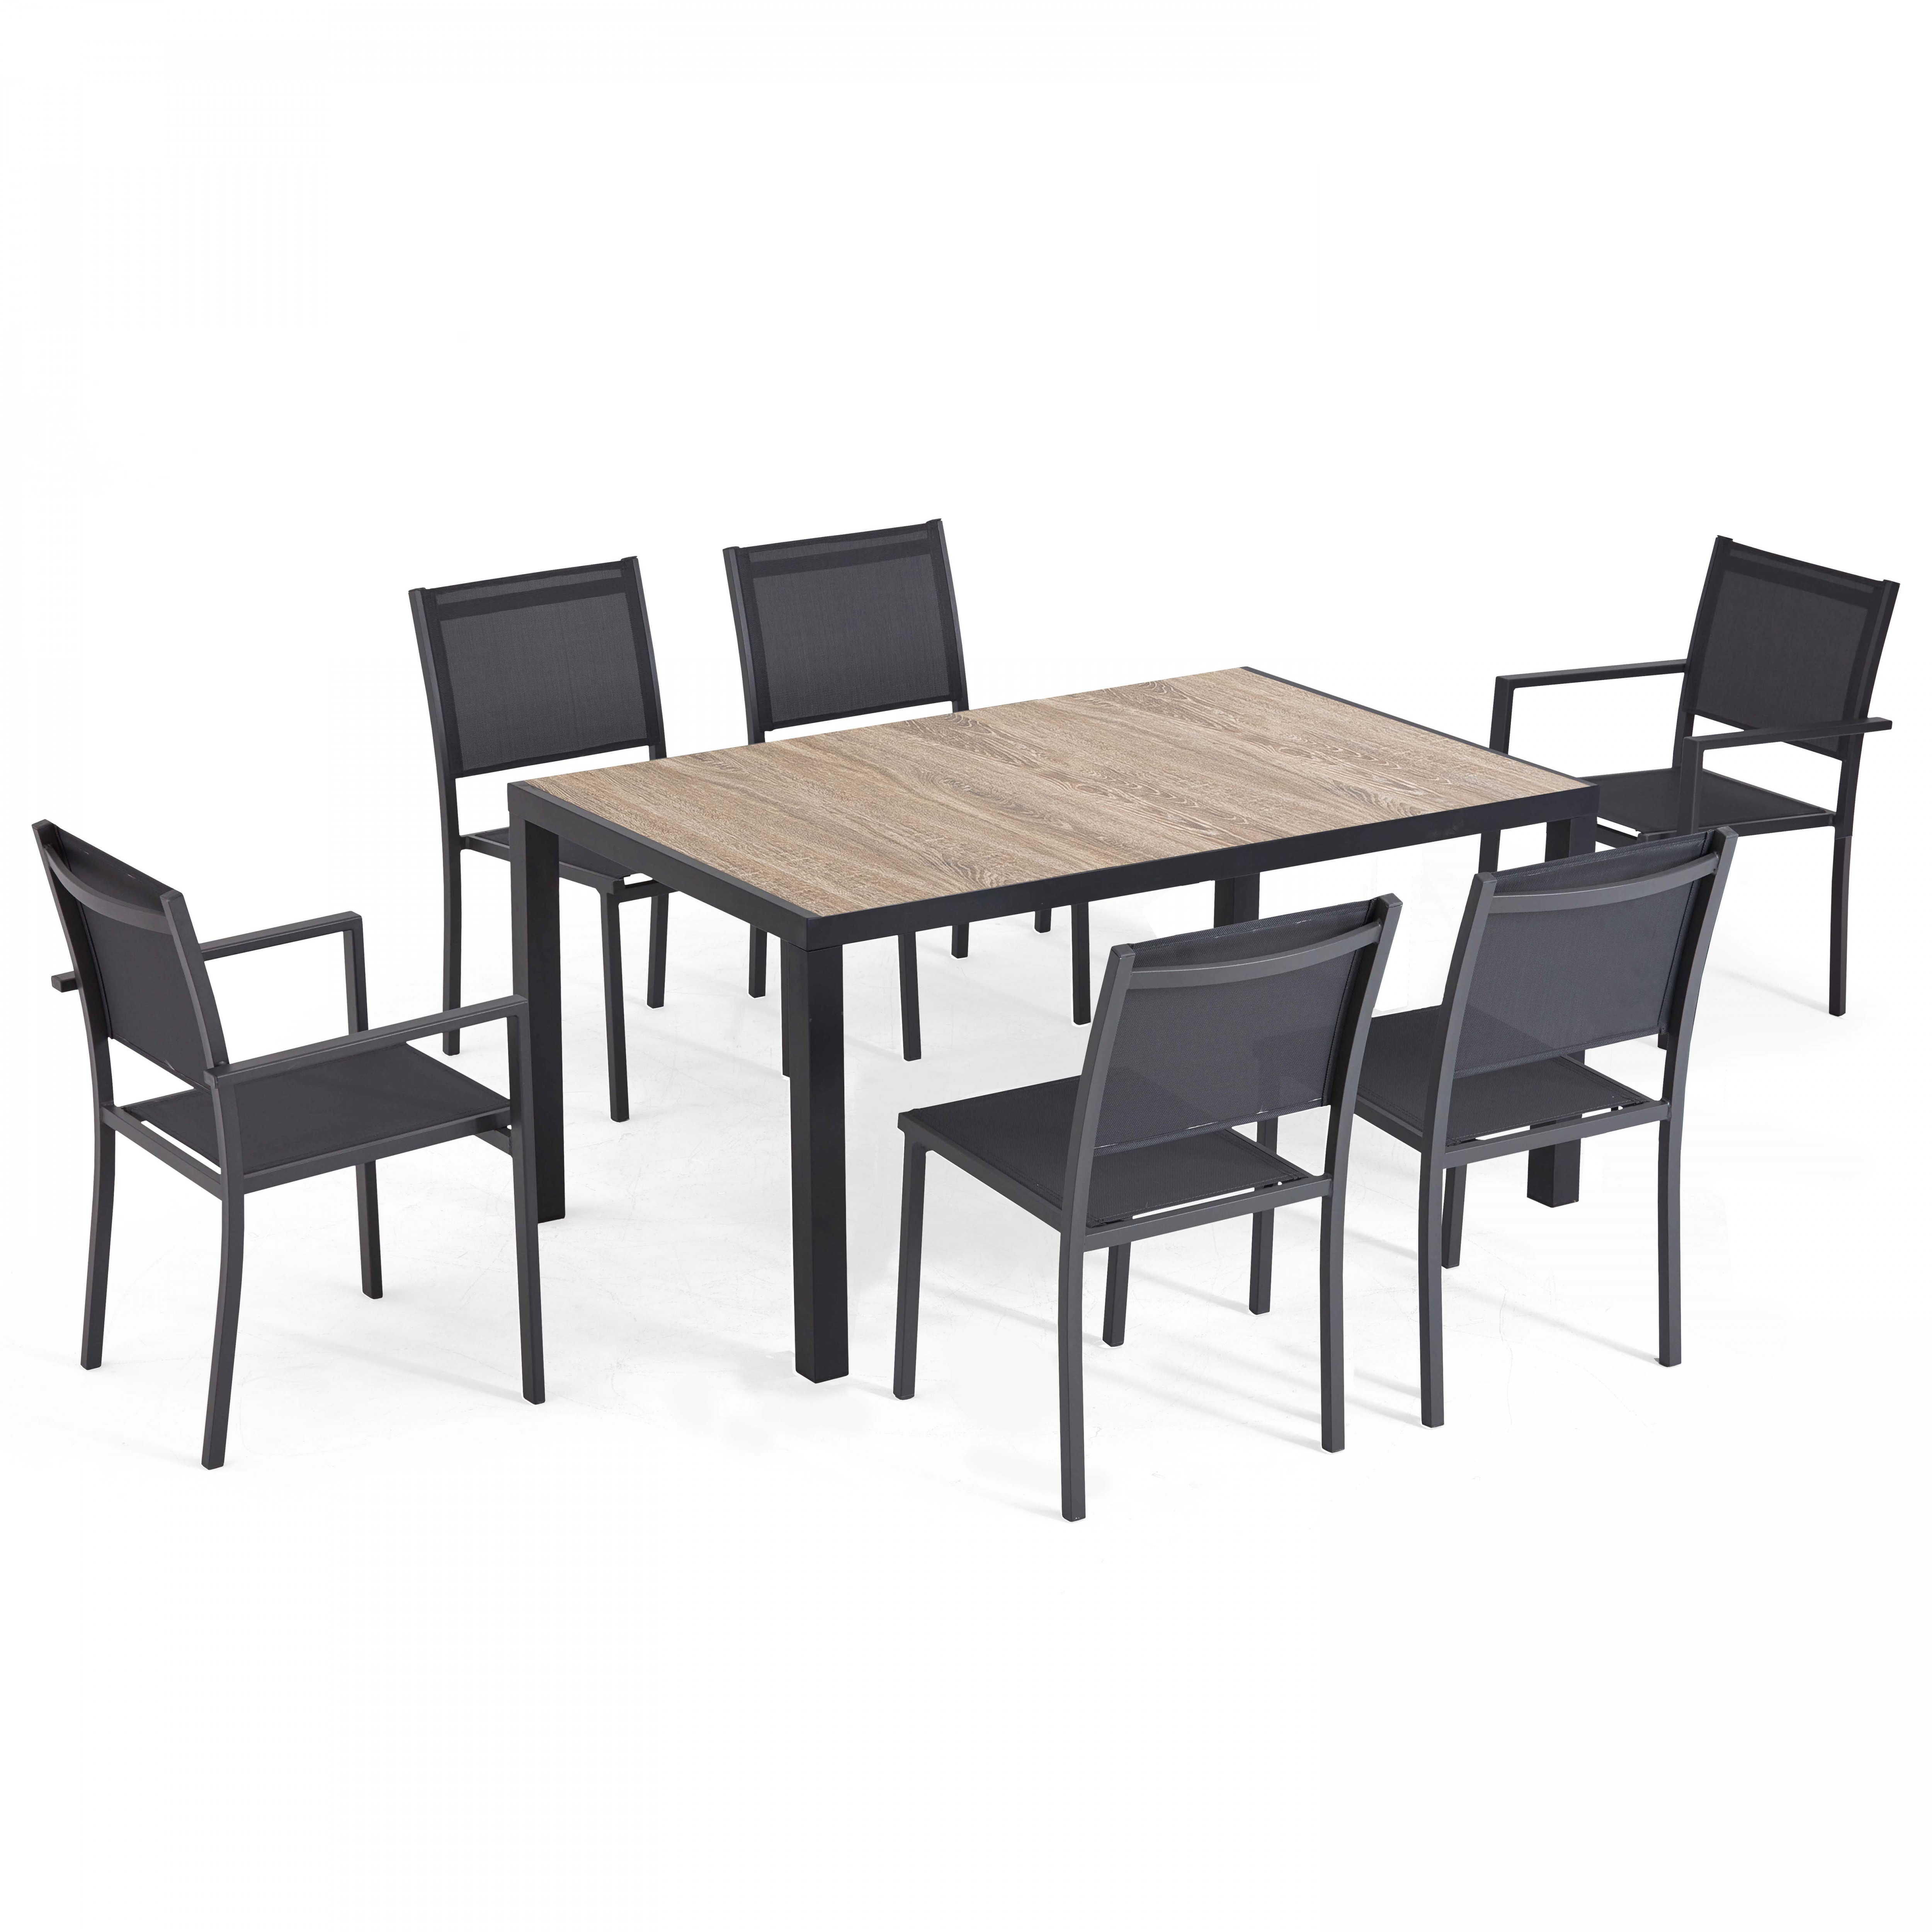 Table de jardin en aluminium et céramique avec 4 chaises et 2 chaises avec accoudoirs